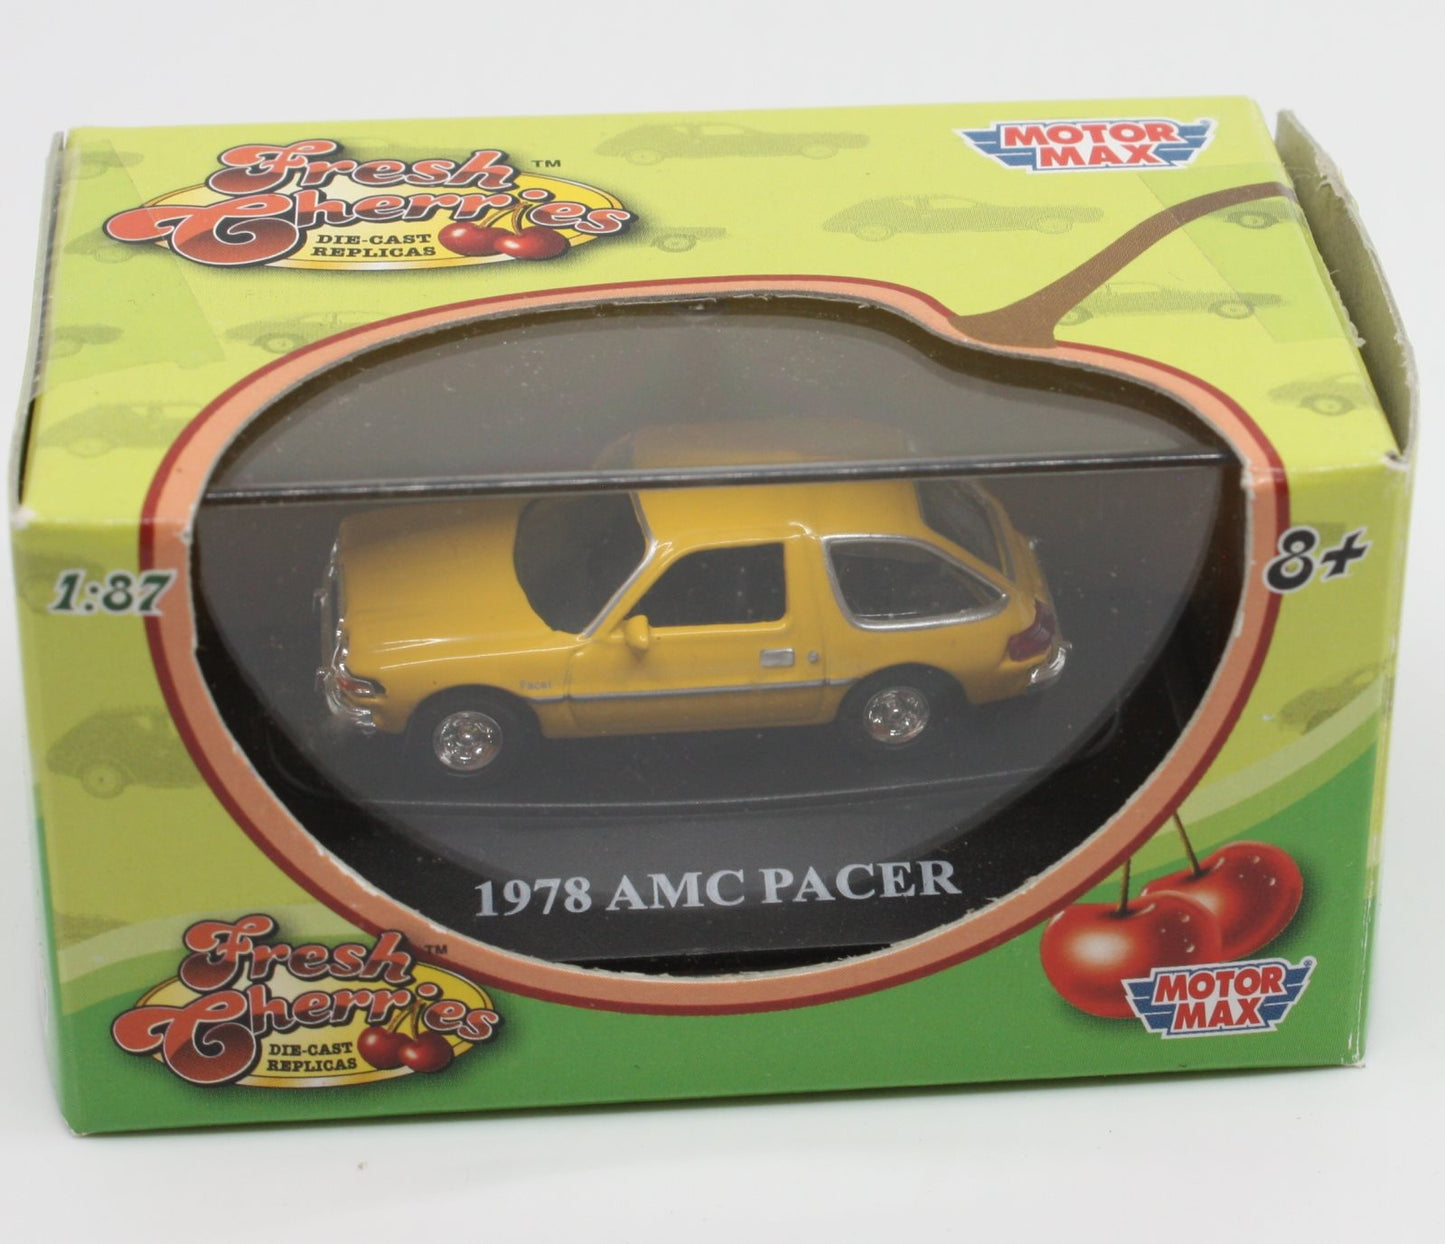 Motor Max 73950FC HO Yellow 1978 AMC Pacer Fresh Cherries